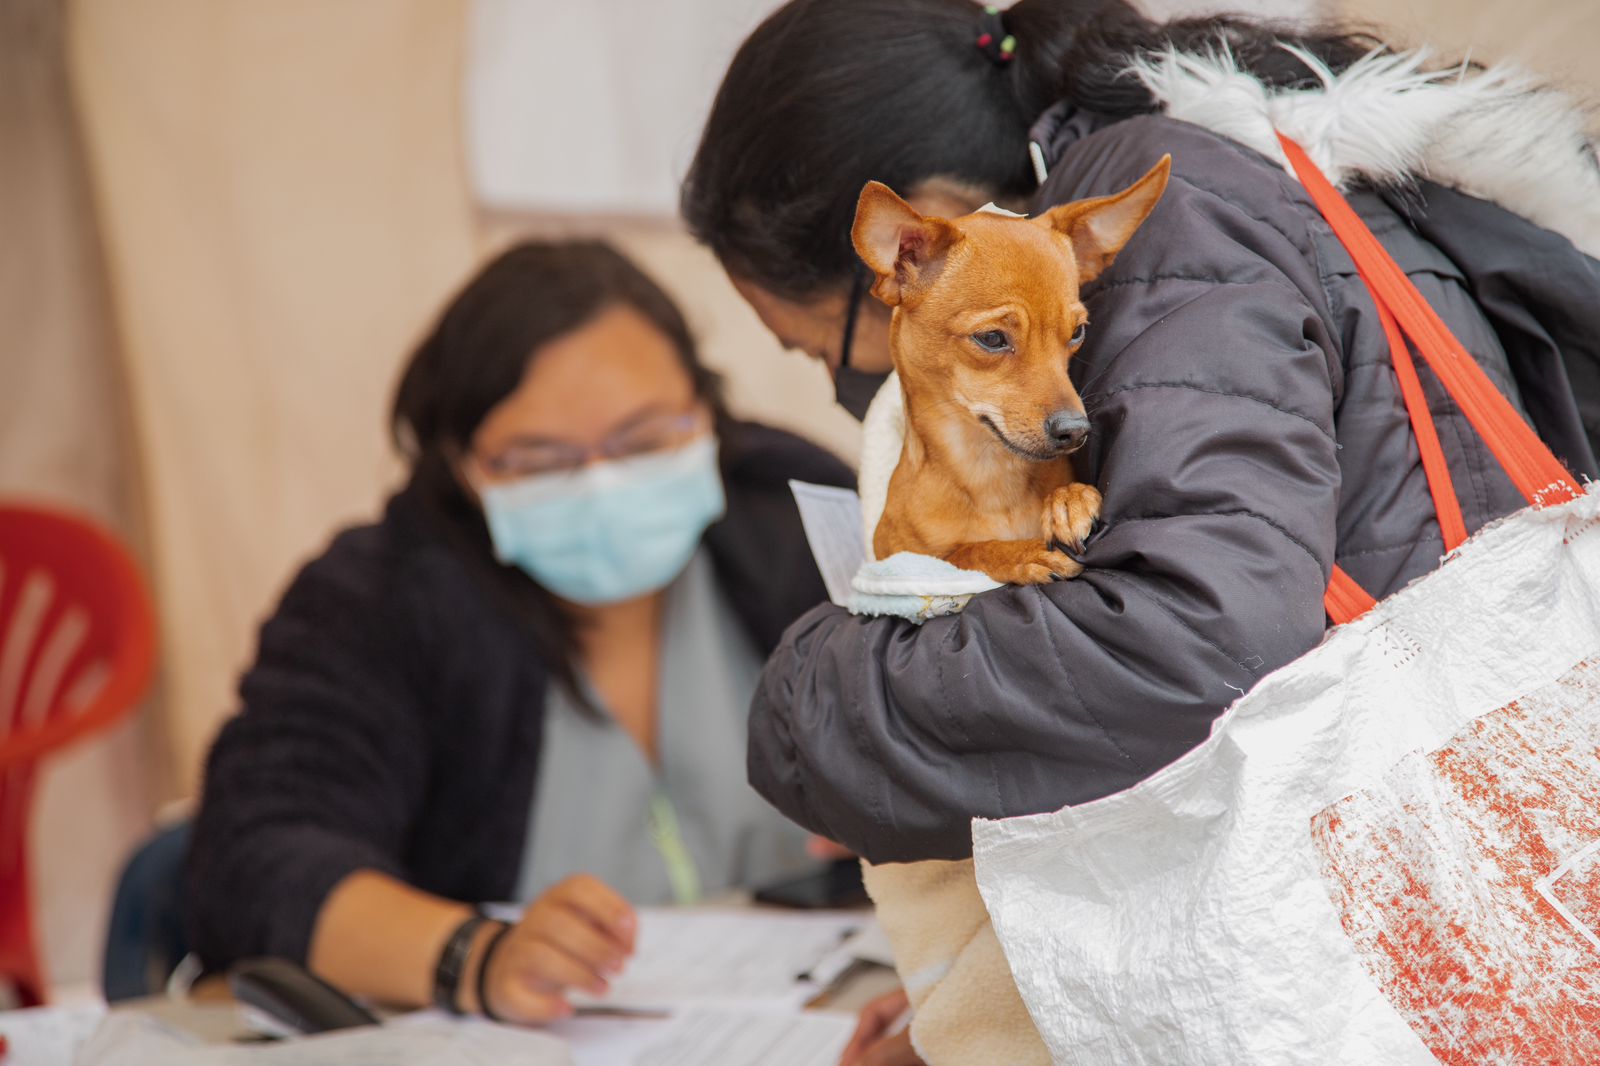 La entidad distrital de protección animal precisó que el formulario es una herramienta para recopilar información que ayude a potenciar el servicio voluntario que los cuidadores y hogares de paso brindan a los animales más vulnerados de Bogotá. Cortesía: Idpyba.